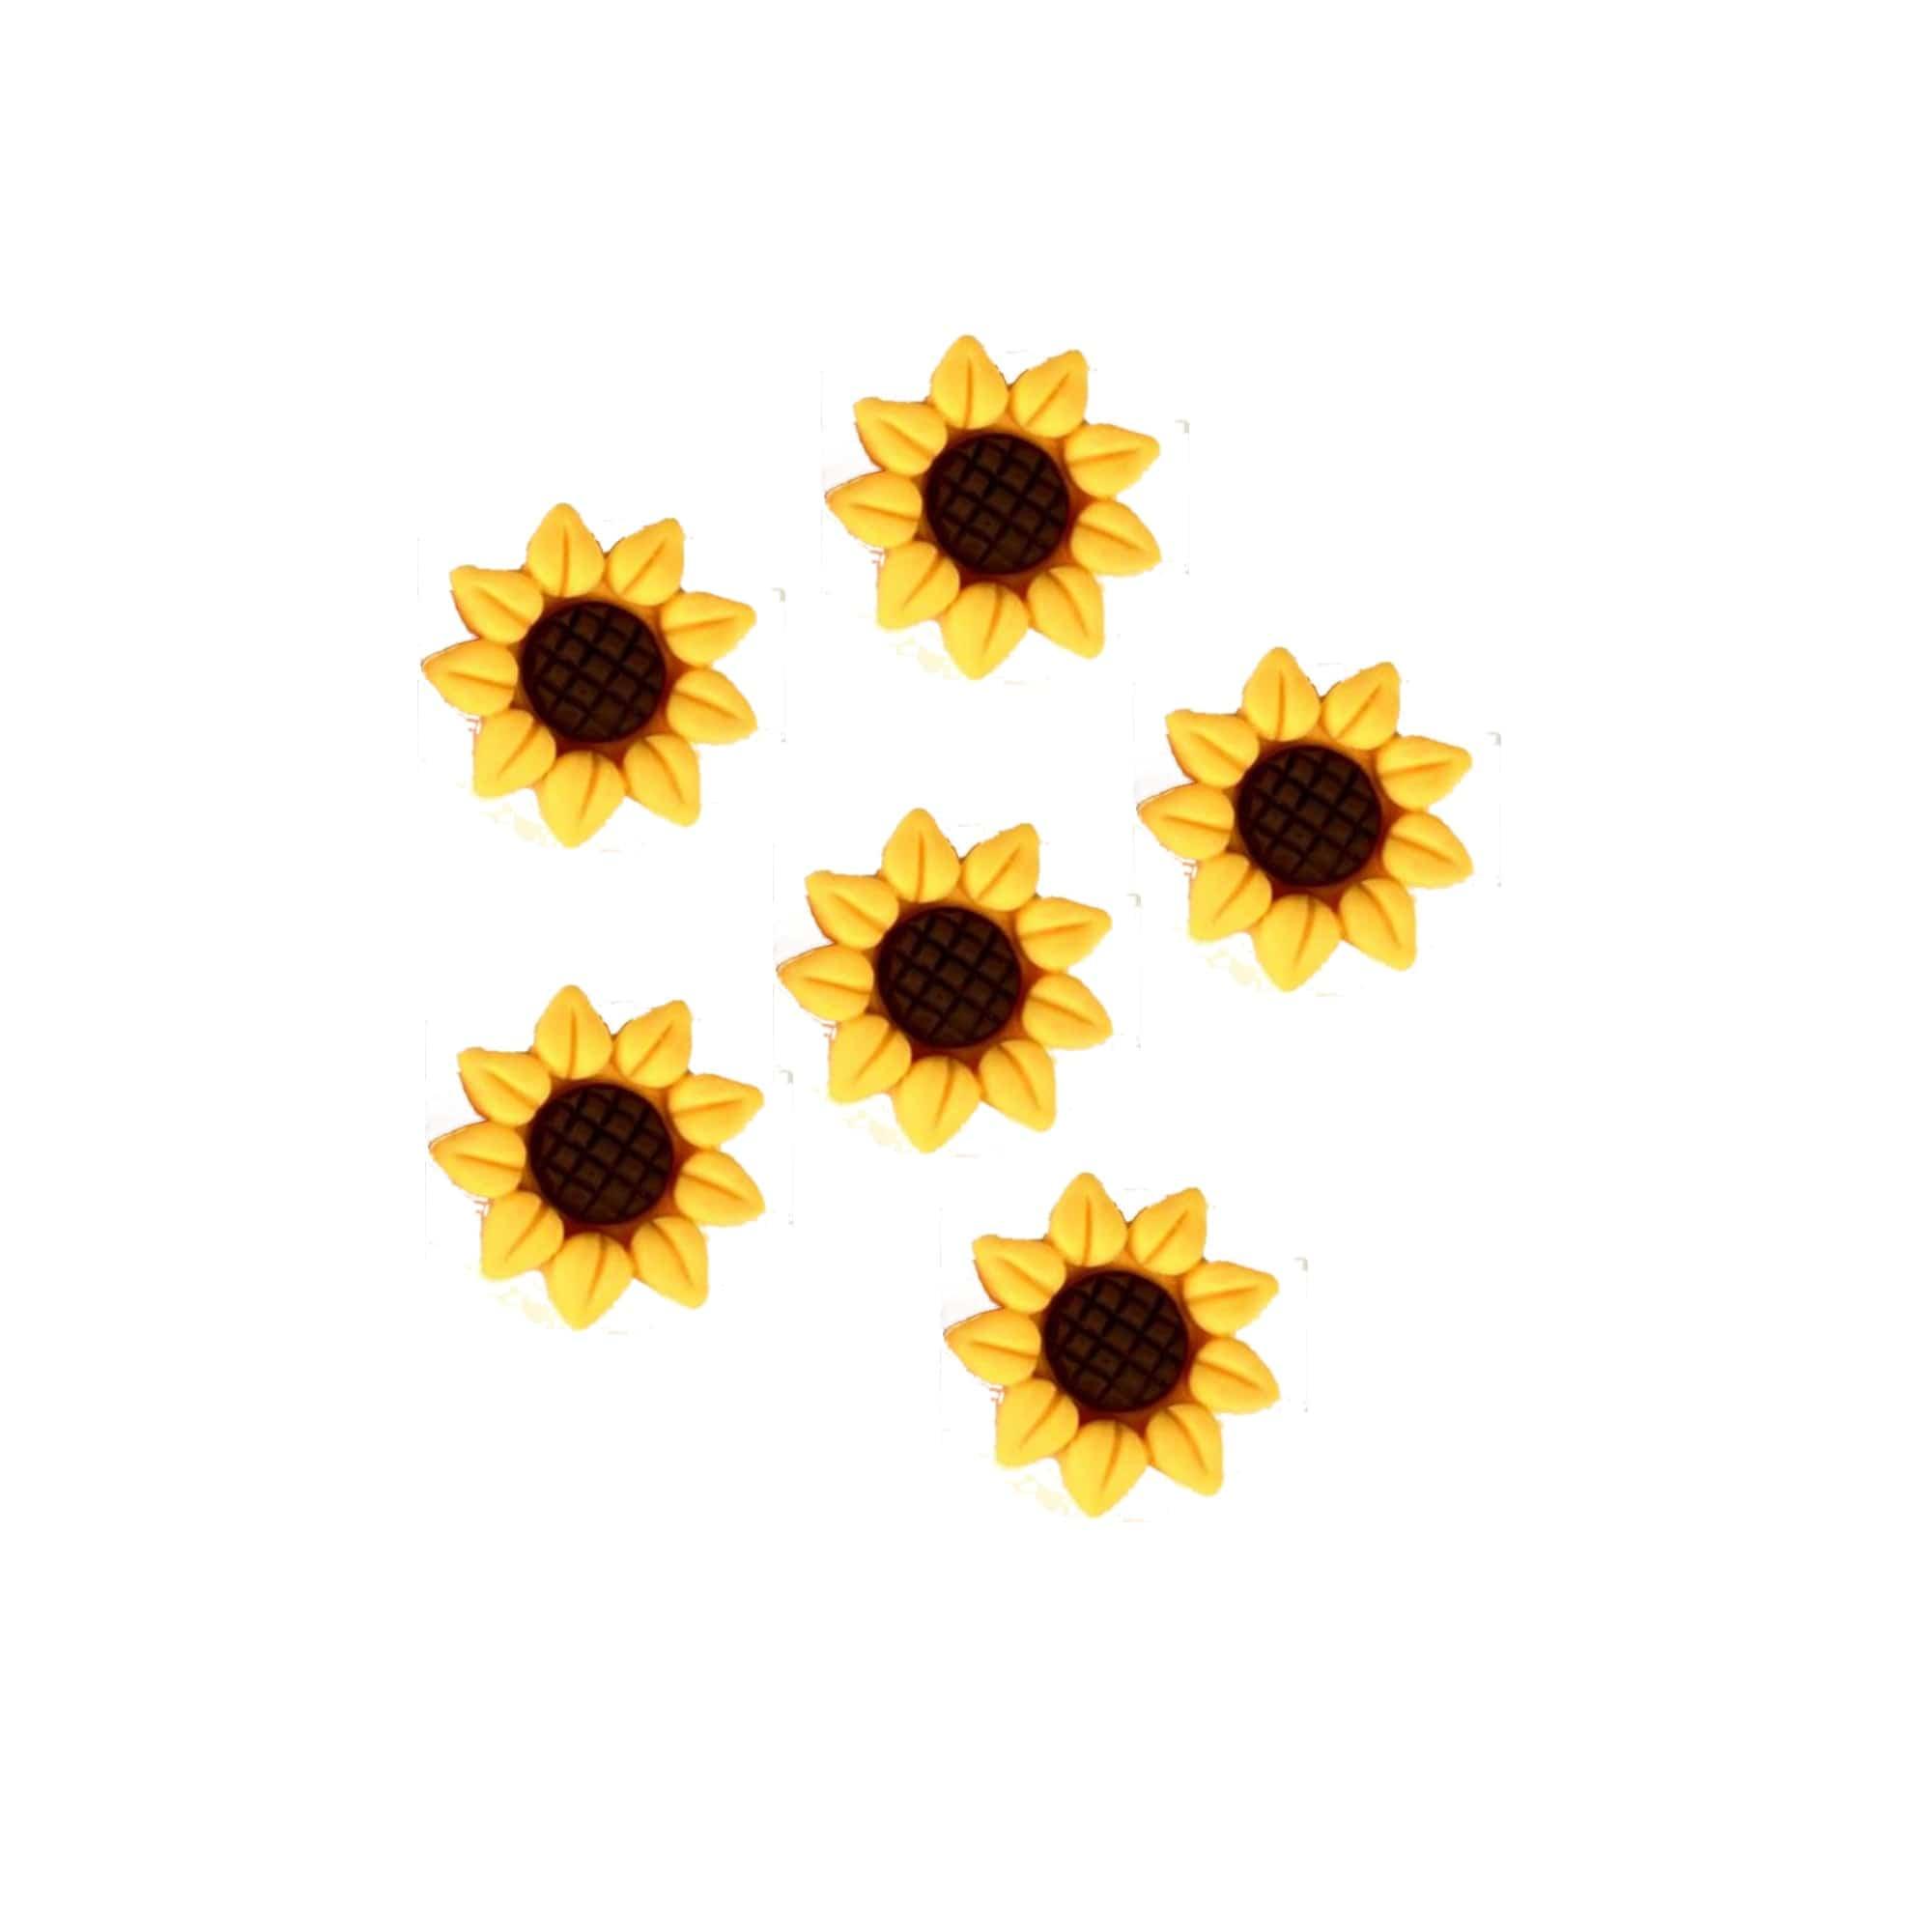 Flower Fun Collection Sunflower Flatback Scrapbook Buttons by SSC Designs - Pkg. of 6 - Scrapbook Supply Companies